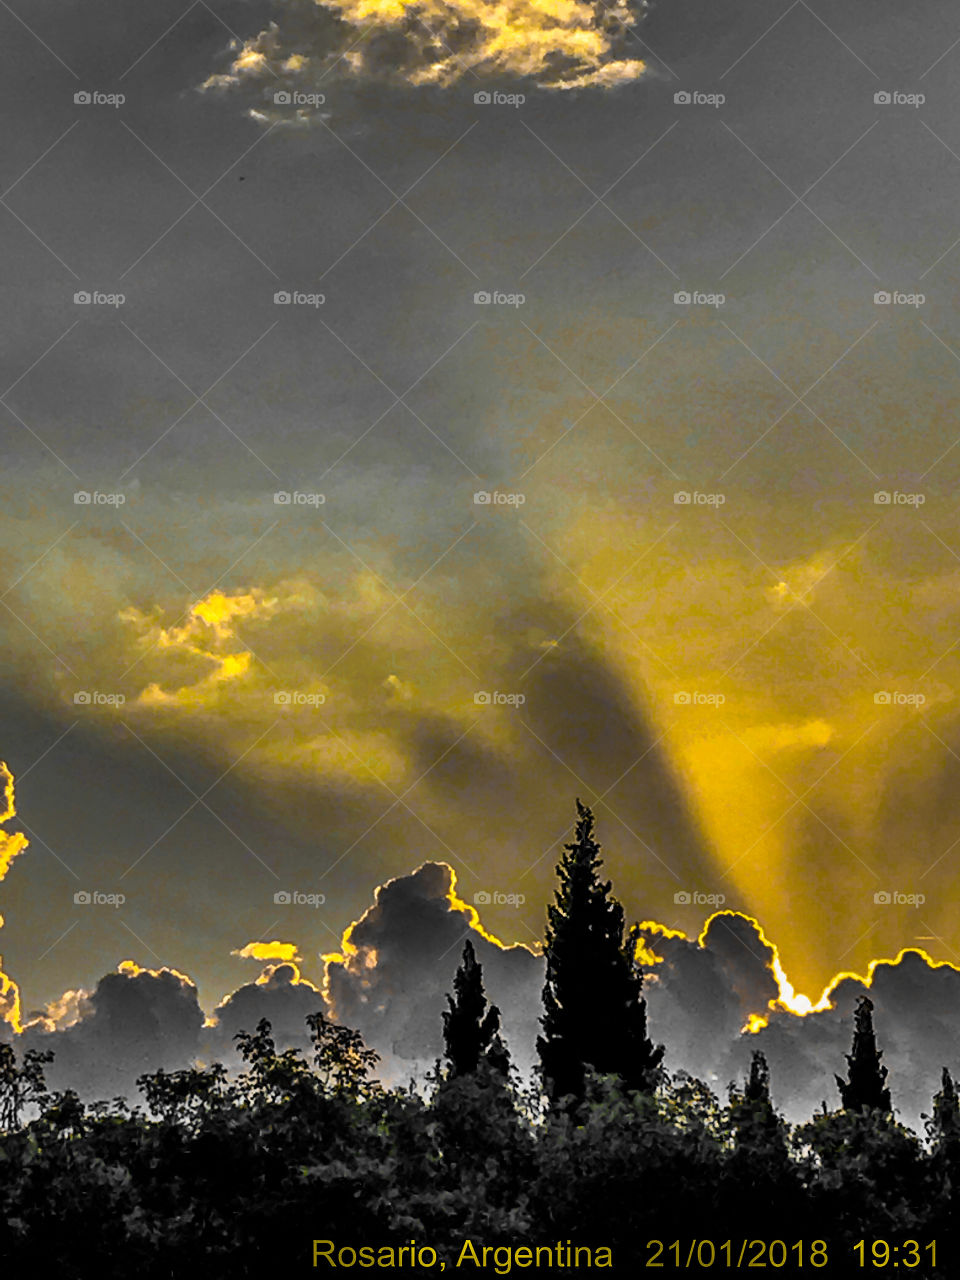 Varias nubes dando su mágico esplendor detrás del astro rey, coronando su bella puesta. 